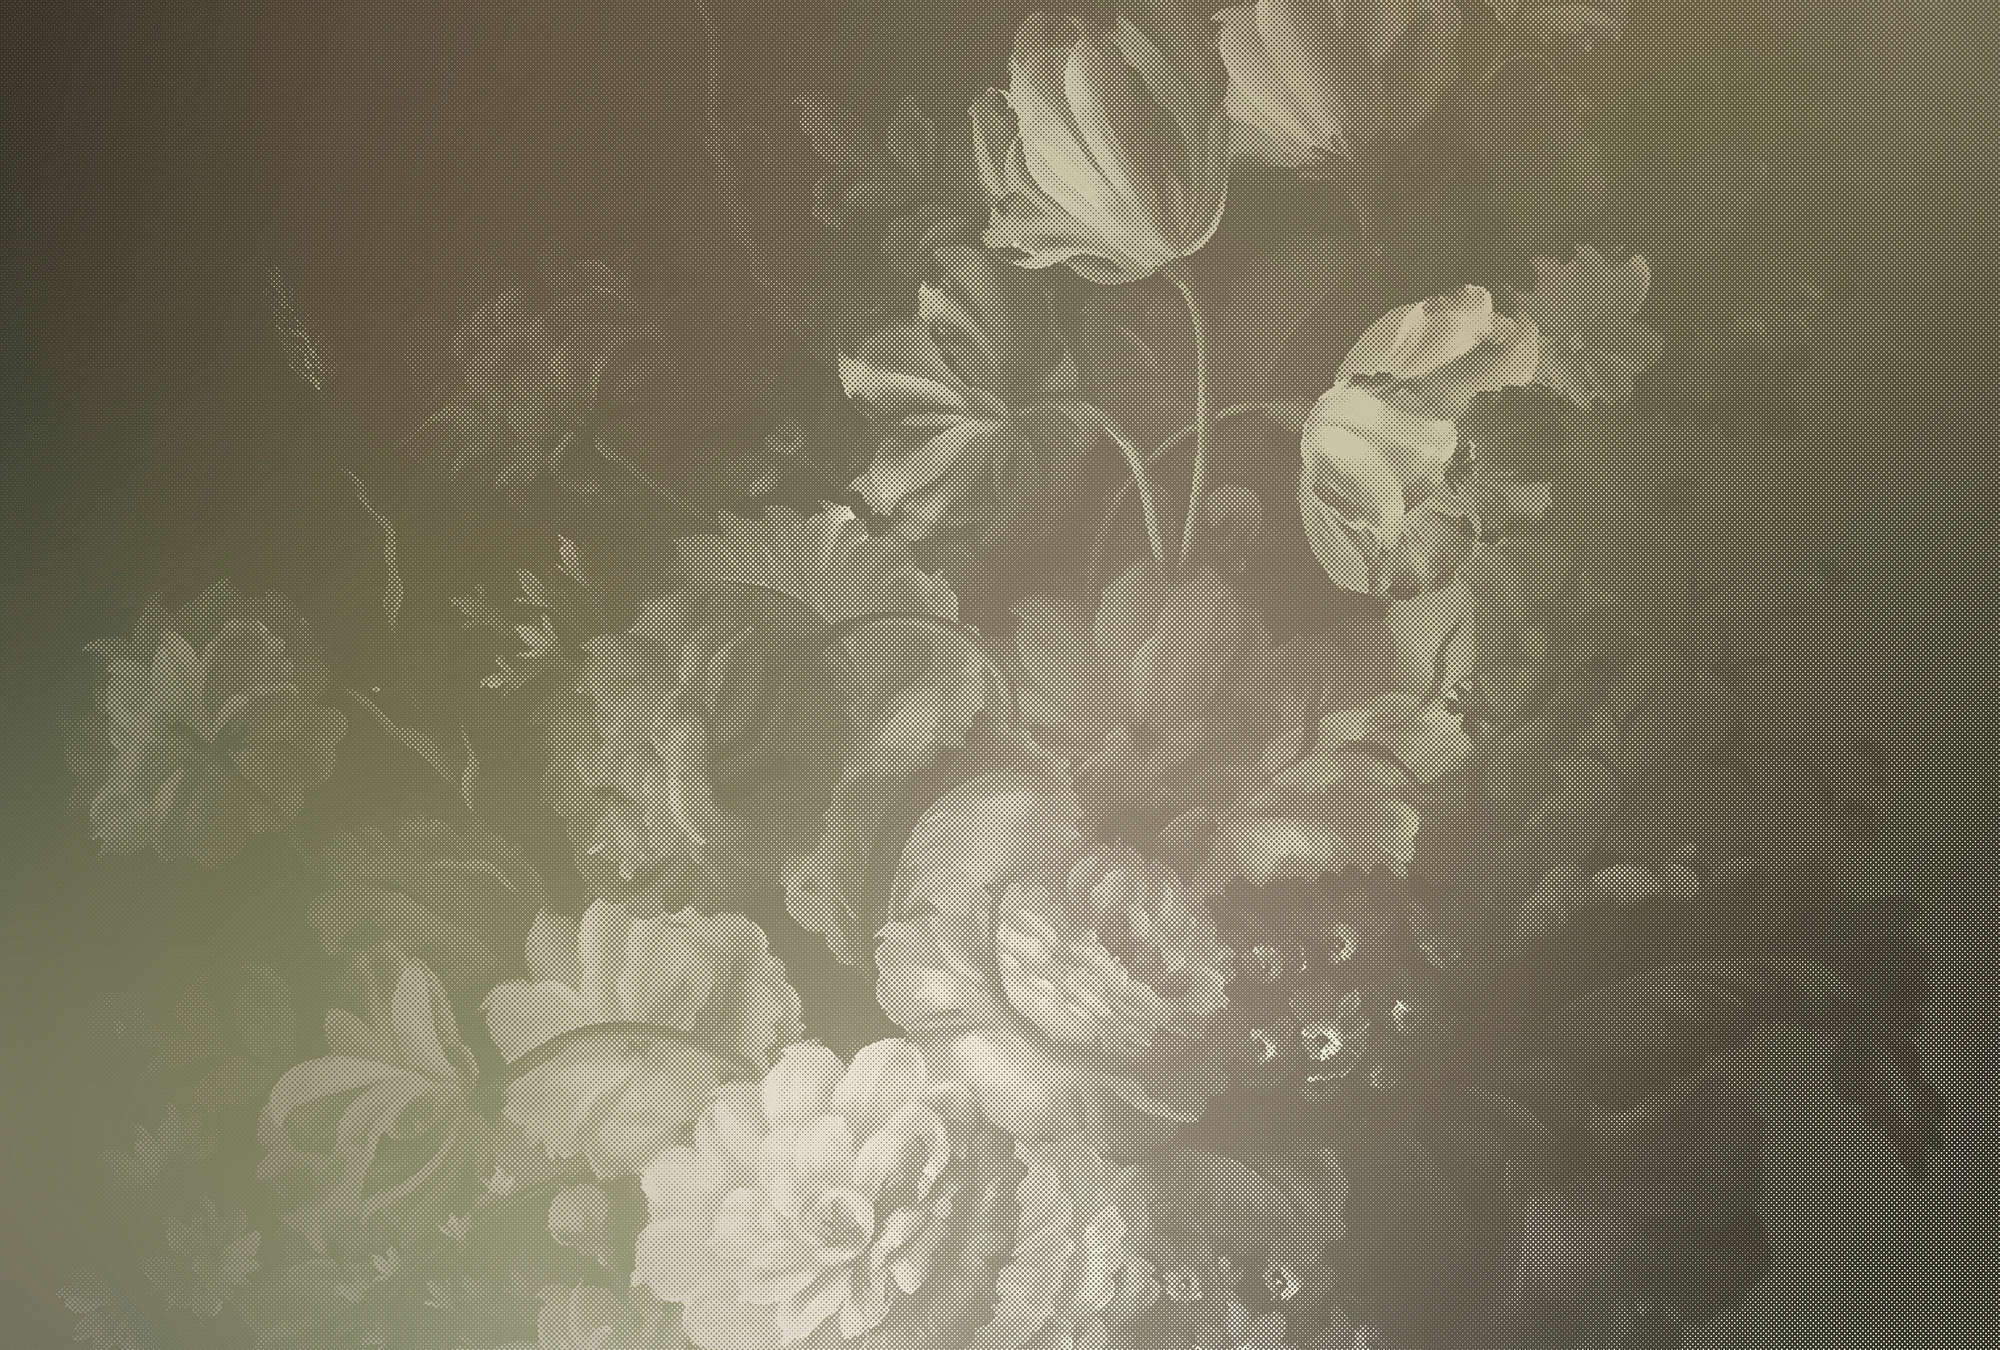             Hollandse pastel 4 - Digital behang kunstig bloemenboeket Hollandse stijl - Taupe | structuur non-woven
        